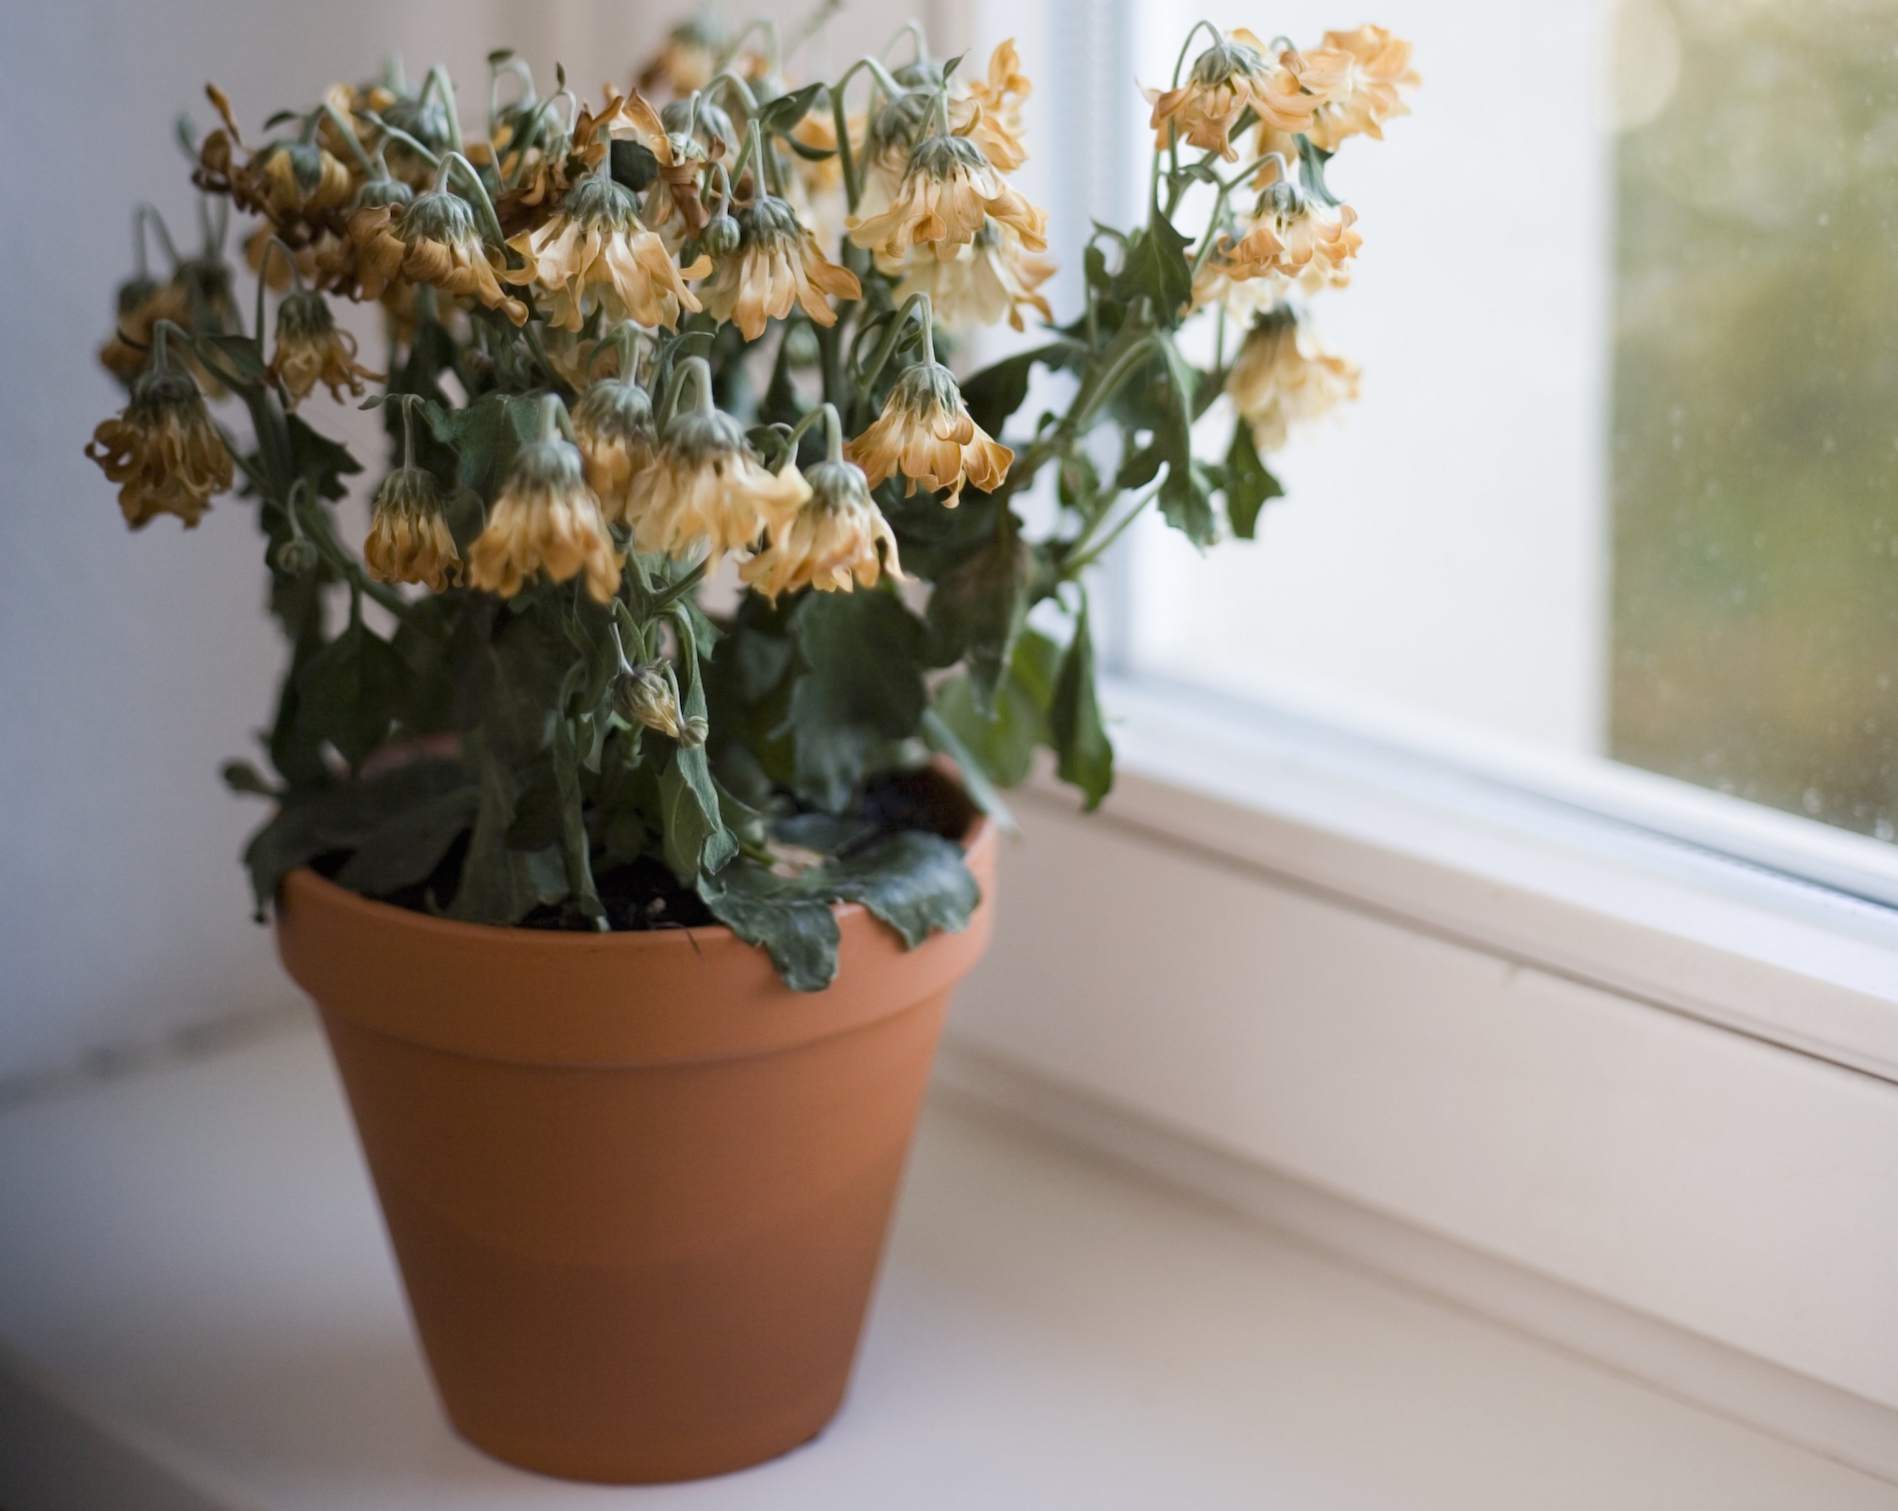 Xét về góc độ phong thủy thì hoa tàn, kể cả hoa khô không giúp tăng sinh khí tích cực cho ngôi nhà.